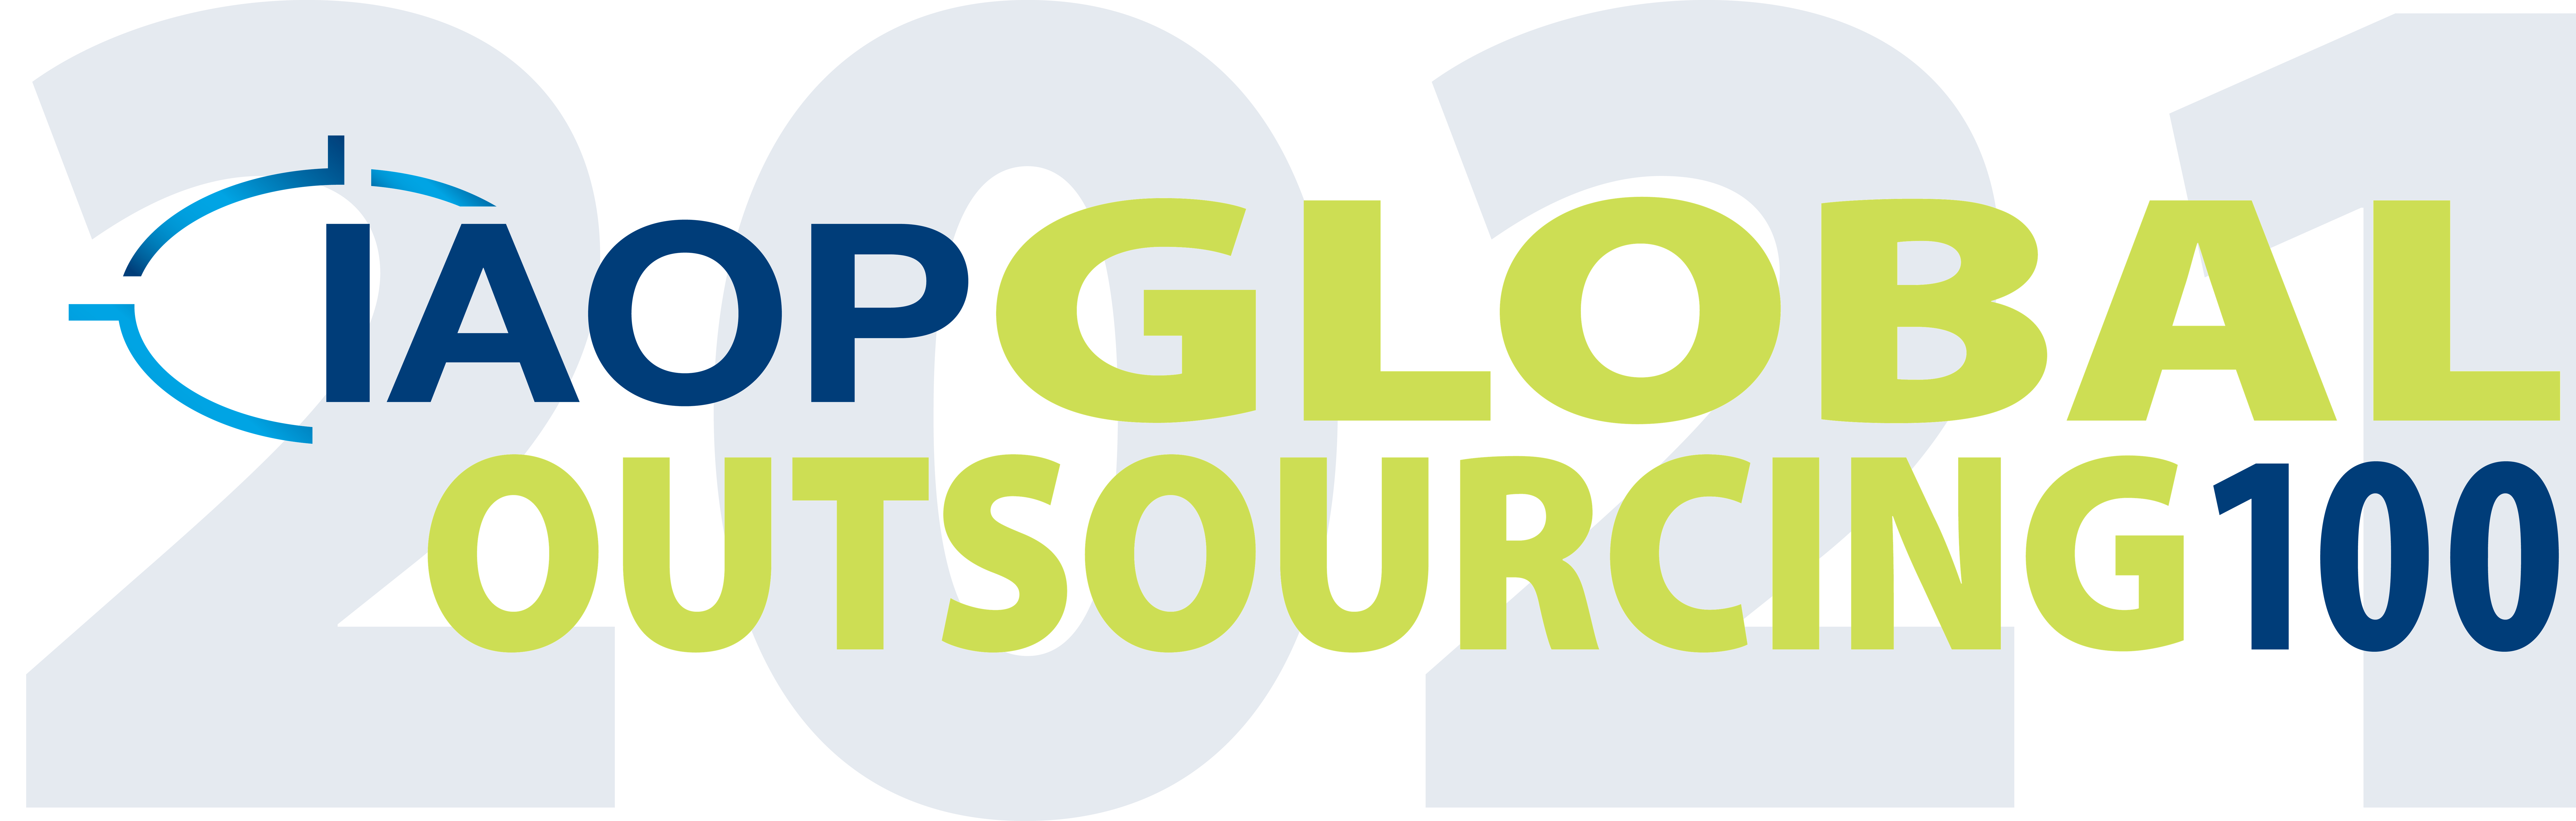 IAOP Global Outsourcing 100